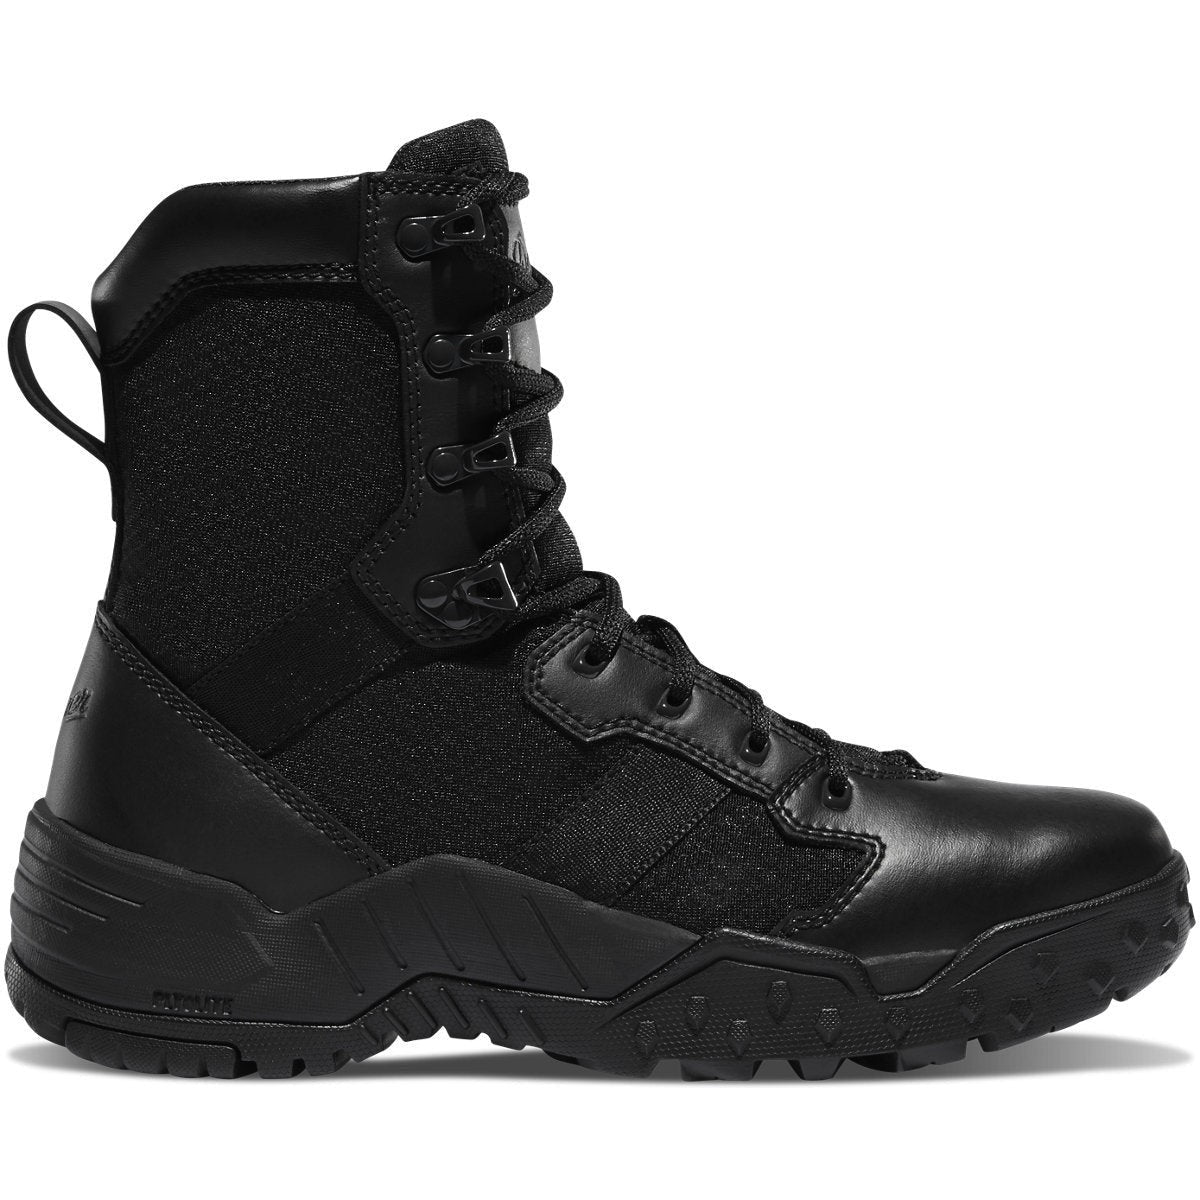 Danner Men's Scorch 8" Side Zip Duty Boot -Black- 25732 6 / Medium / Black - Overlook Boots